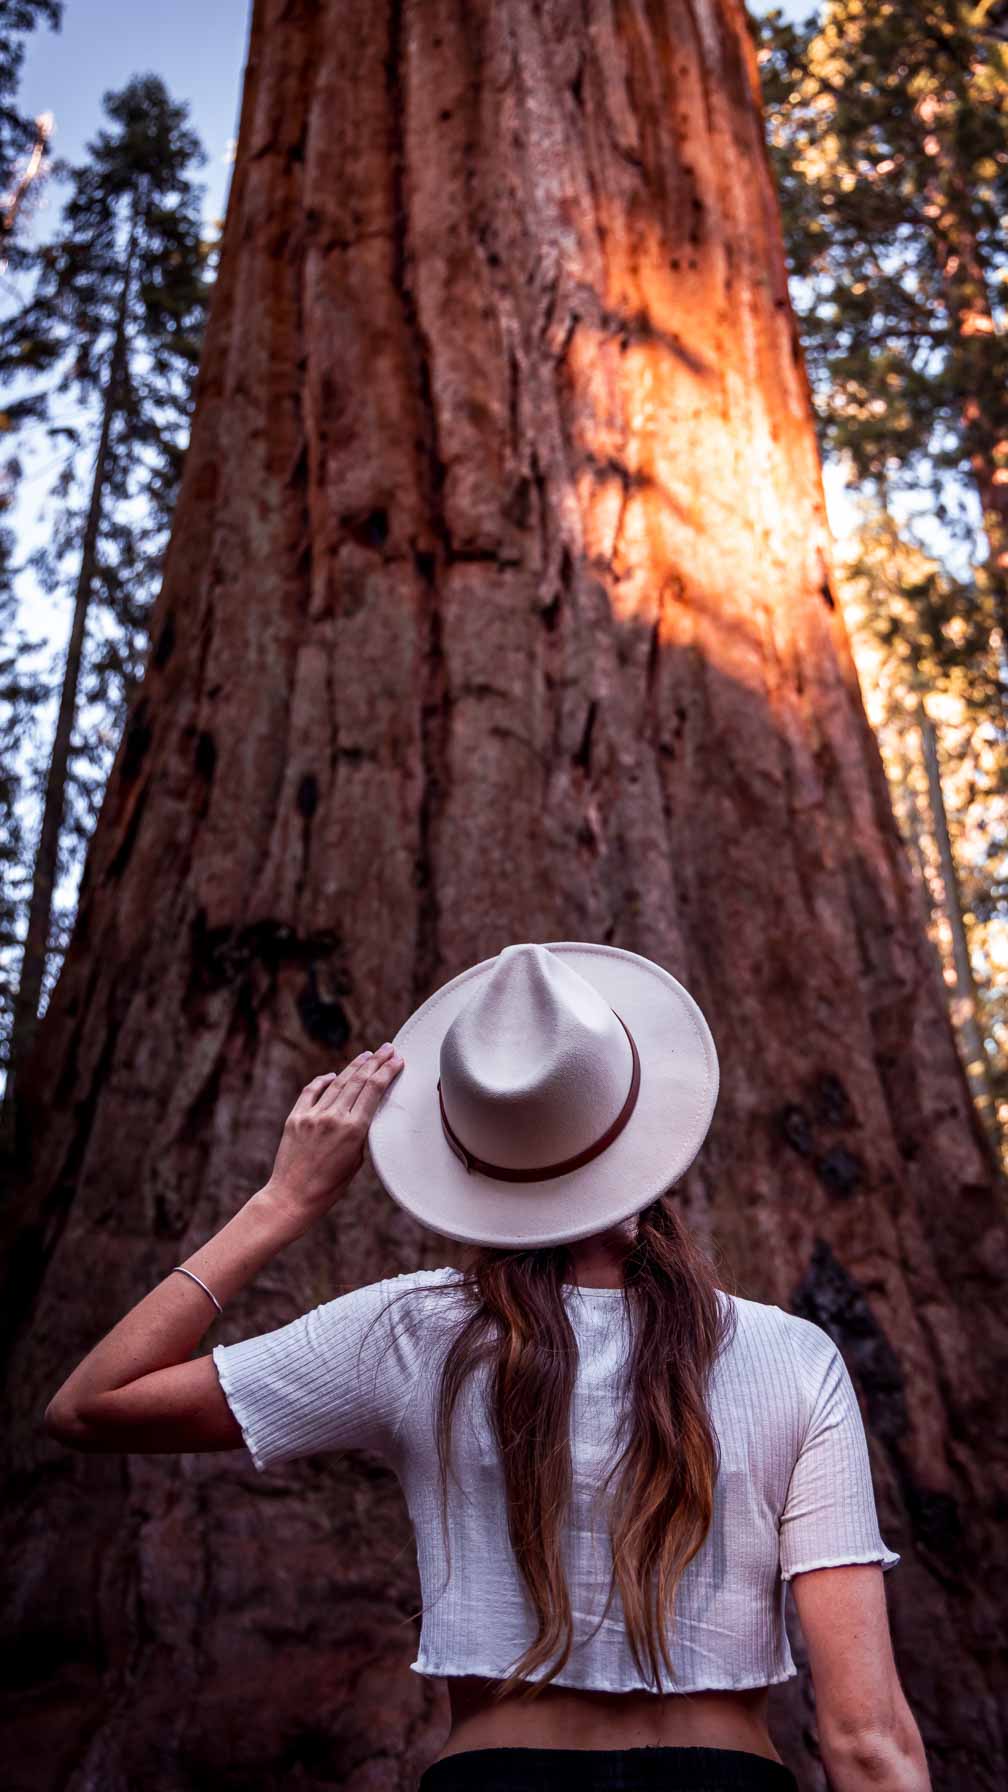 Parque Sequoias Estados Unidos-11